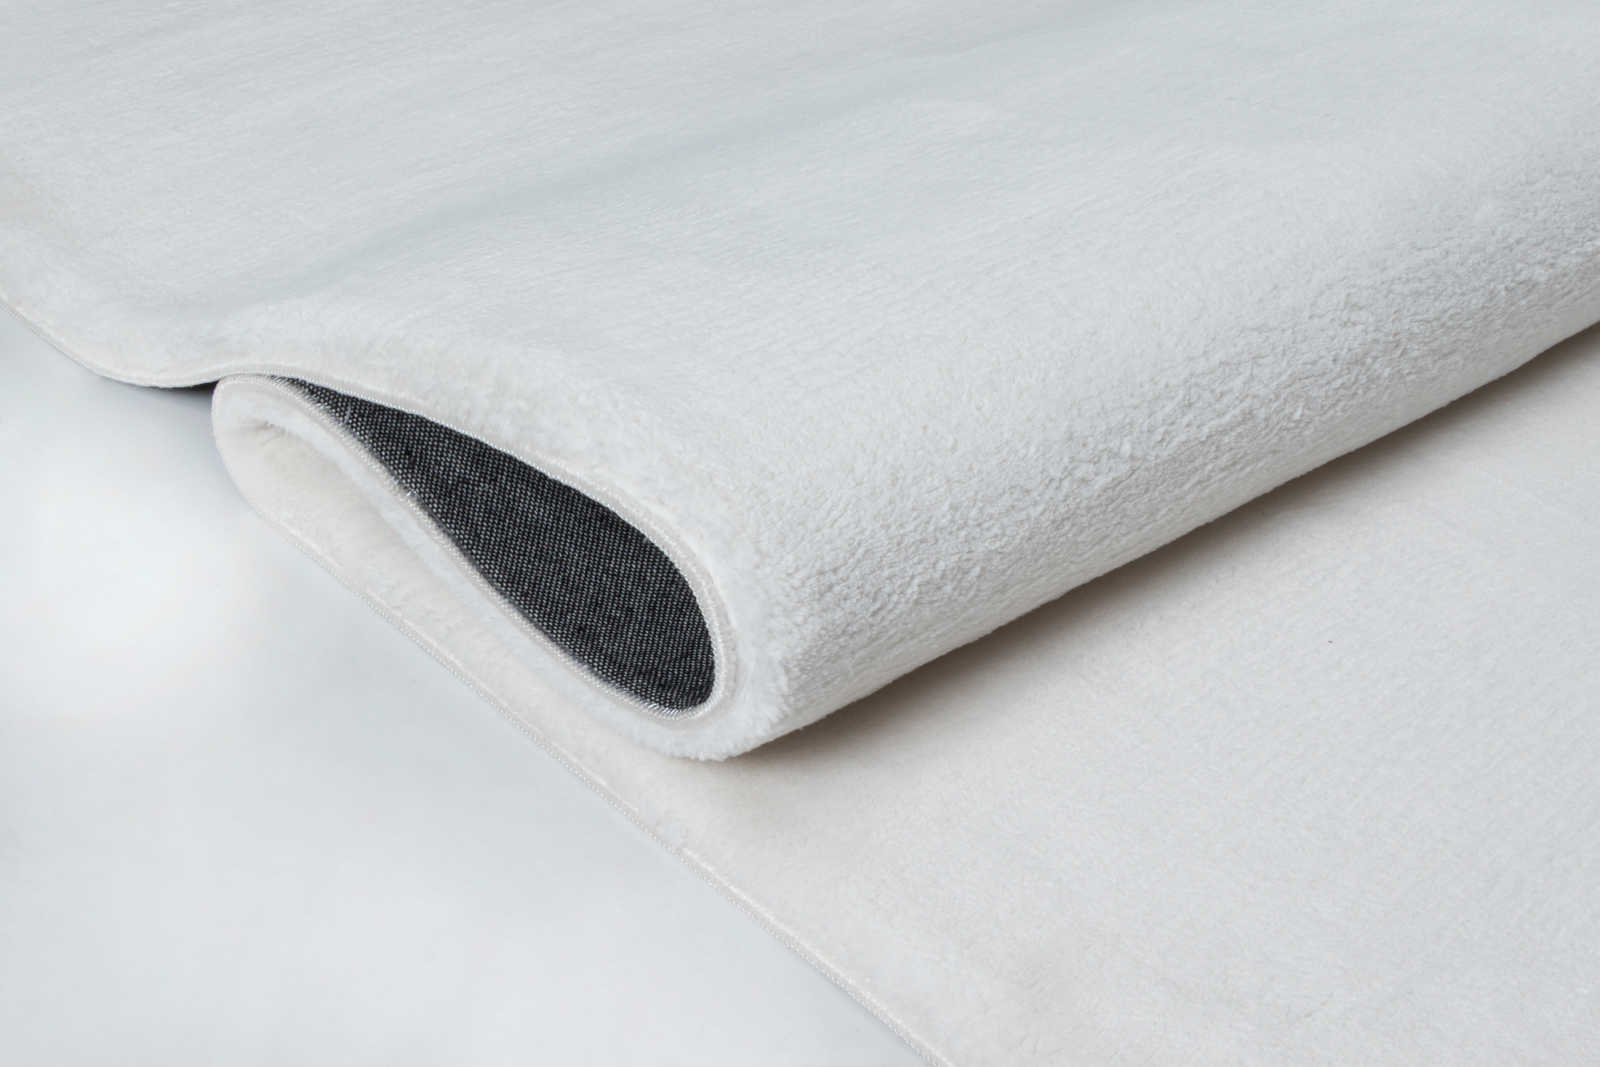             Vaporoso tappeto a pelo alto in un piacevole color crema - 290 x 200 cm
        